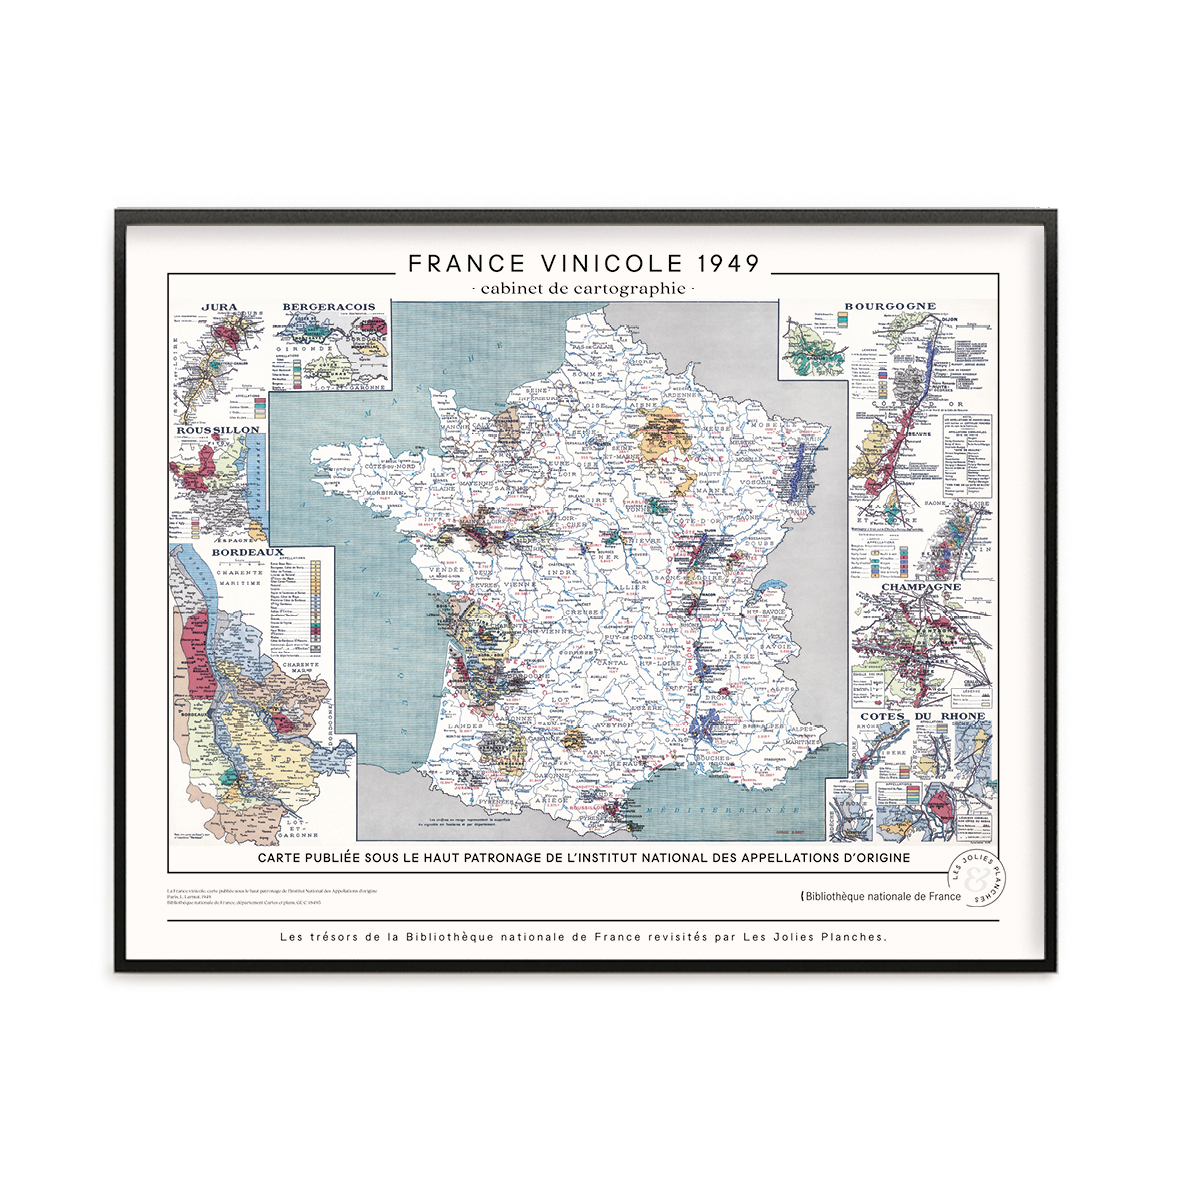 Carte des Vins de France Vintage – La Carte des Vins s'il vous plaît